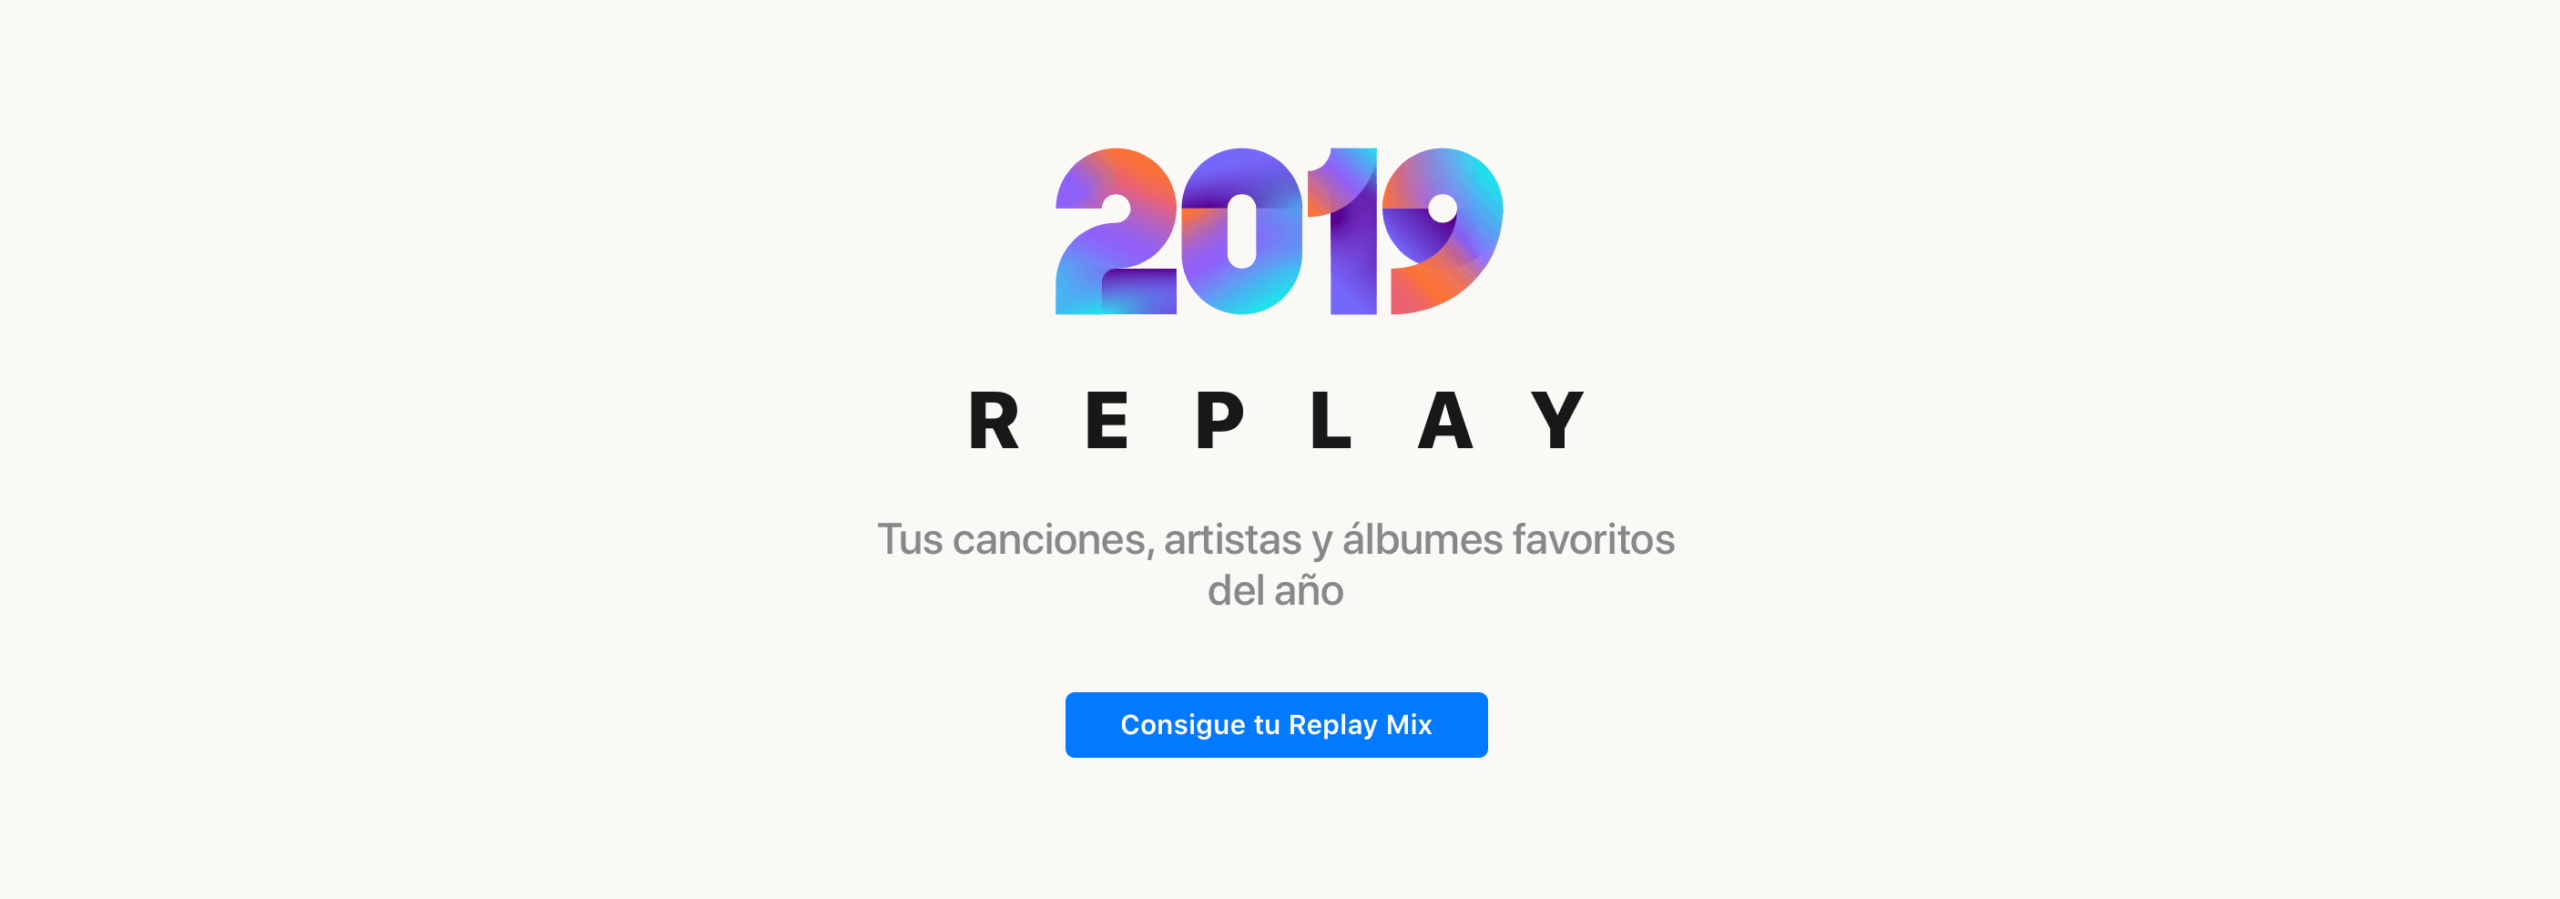 La lista "Replay" en Apple Music nos hace un resumen por años de lo que más hemos escuchado